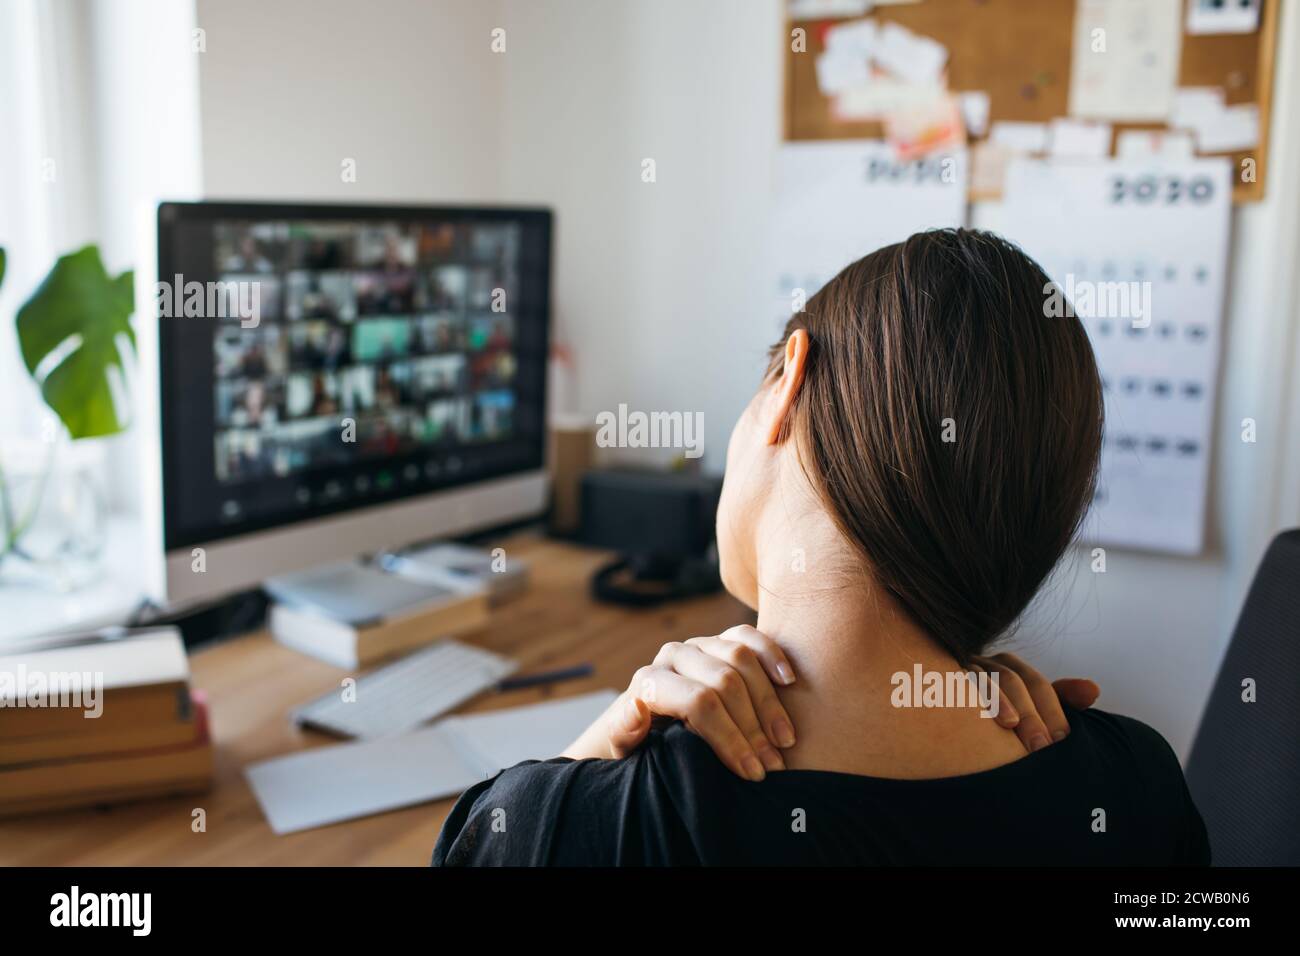 Junge Frau mit Nackenschmerzen nach langen Arbeitszeiten im Heimbüro. Lösen Sie die Spannung im Nacken. Stockfoto